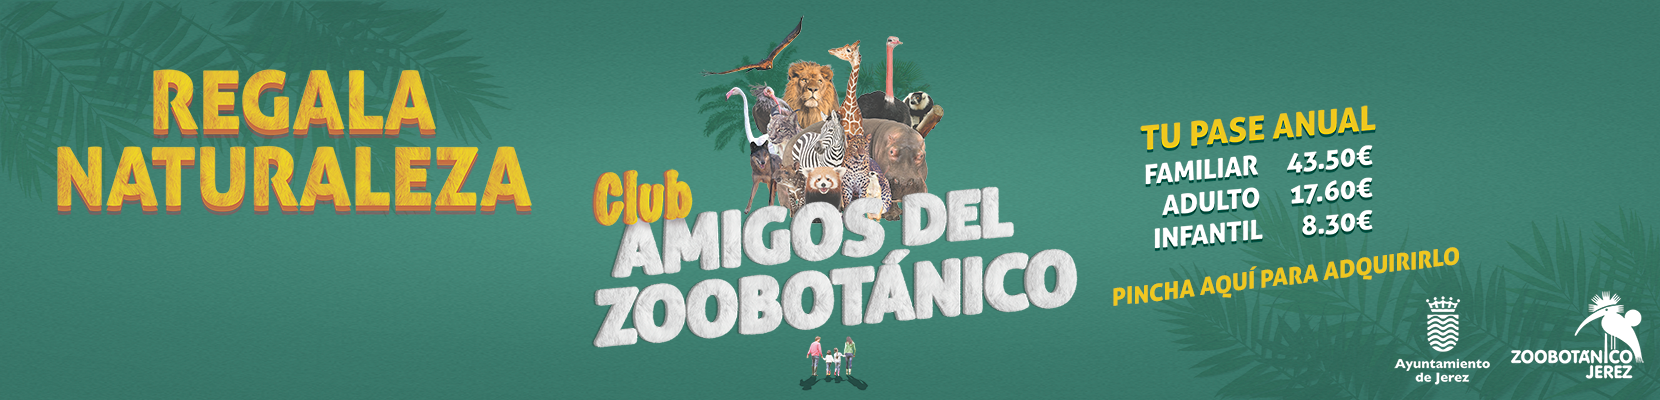 Grupo animales y regala club amigos del Zoo.